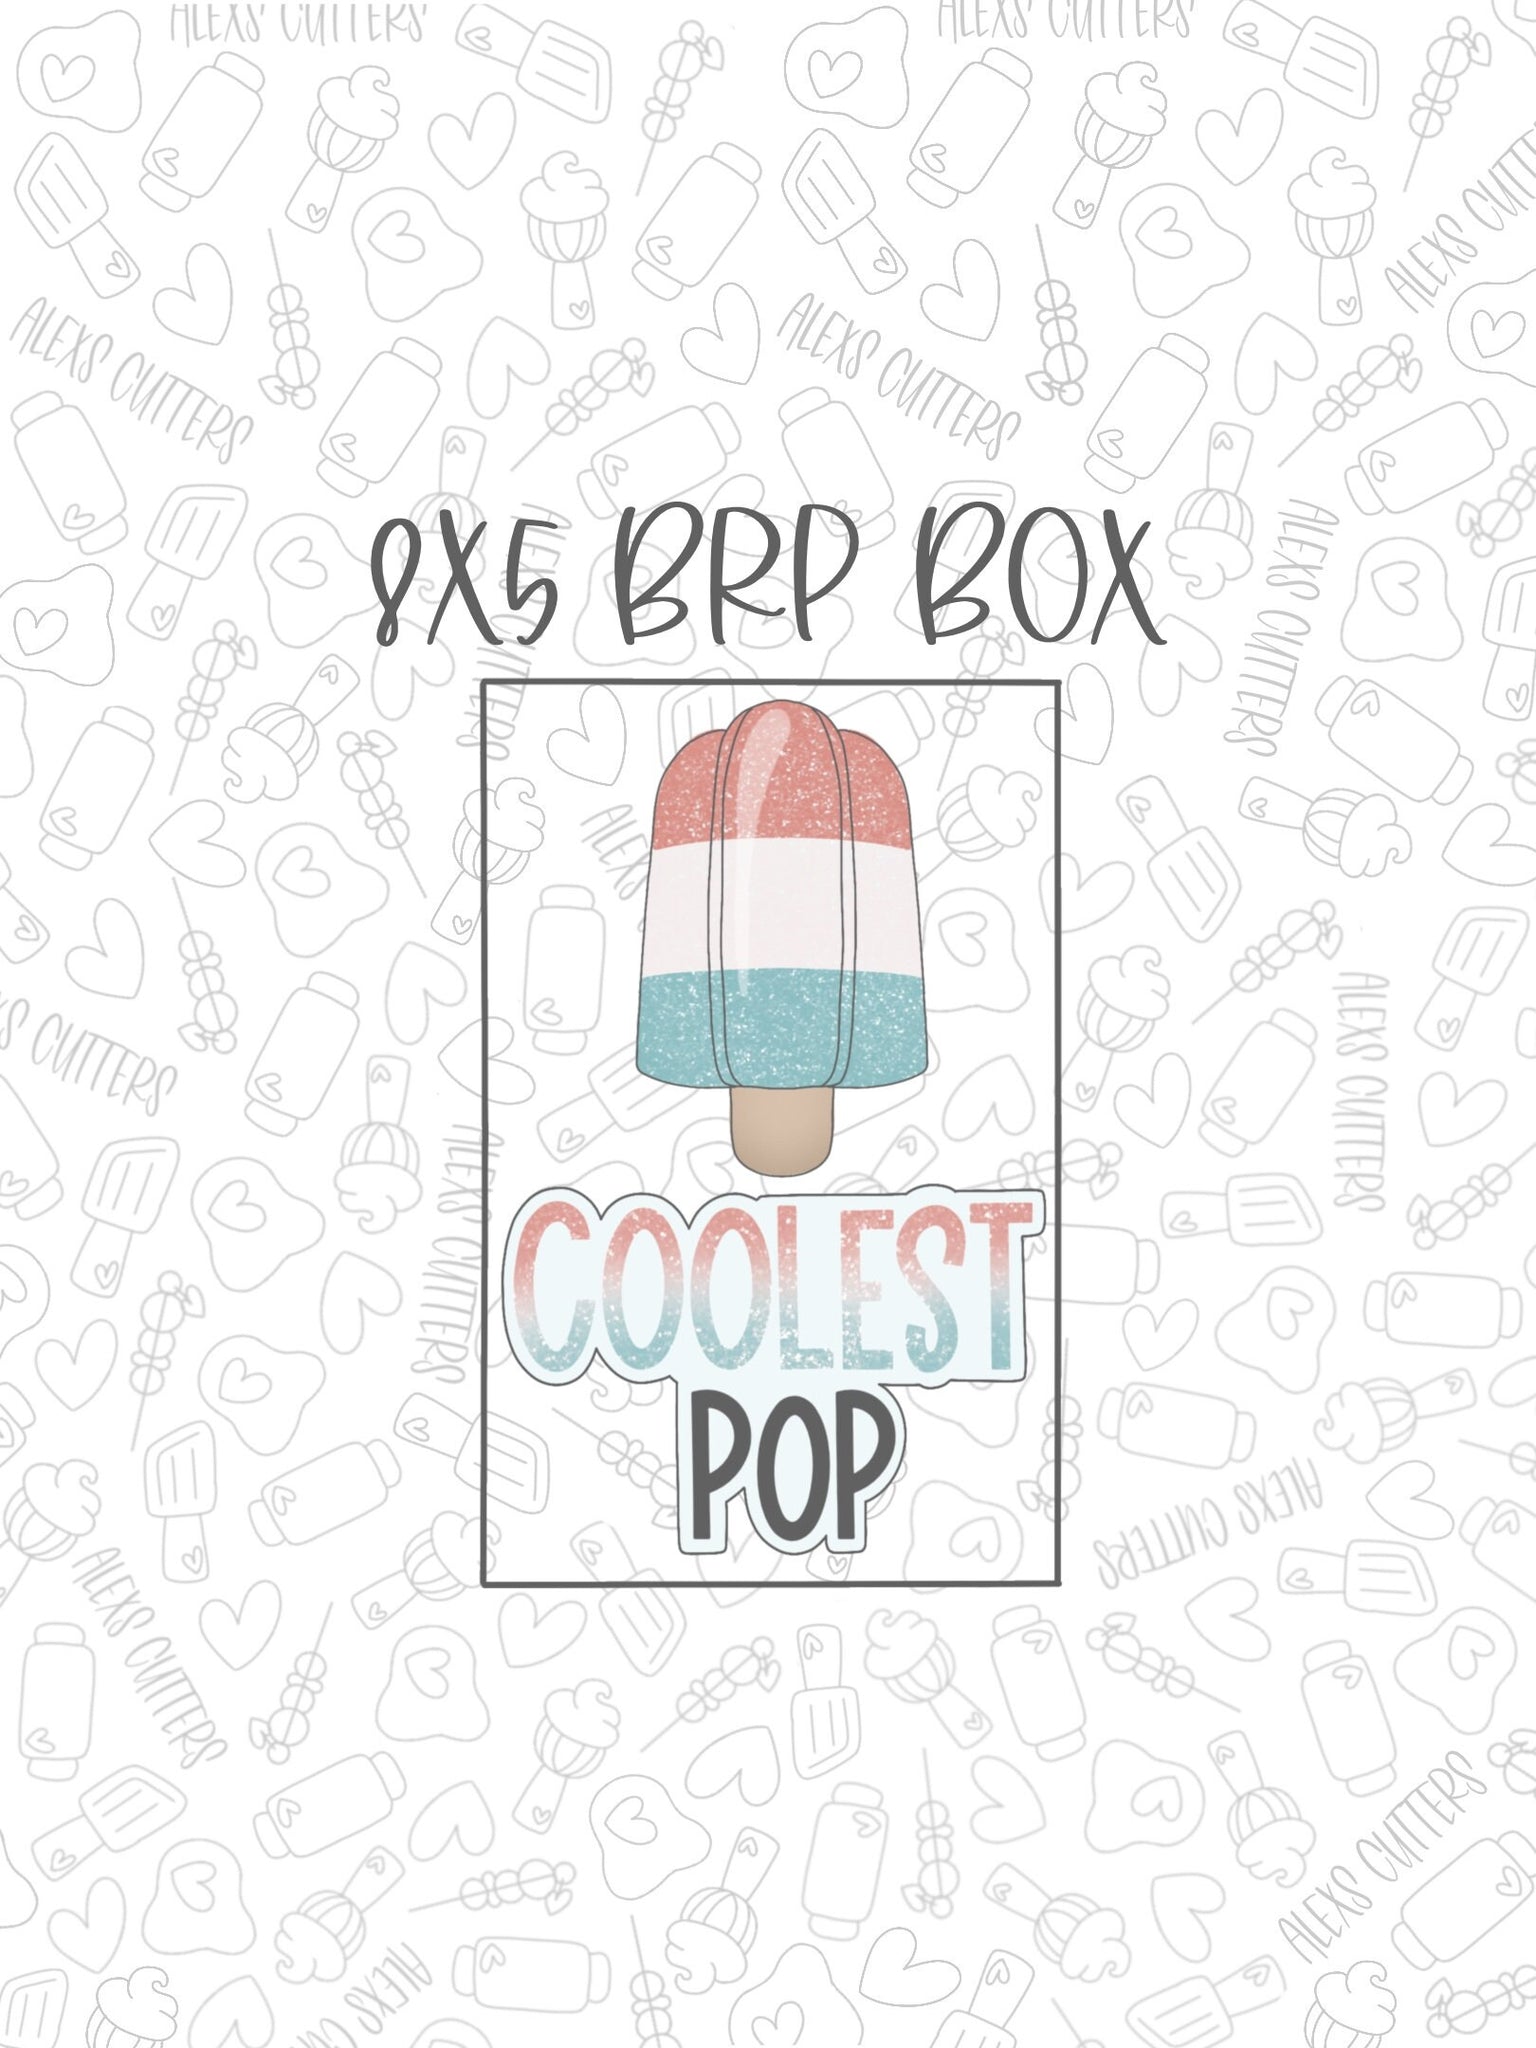 Coolest Pop Collection 8x5 BRP